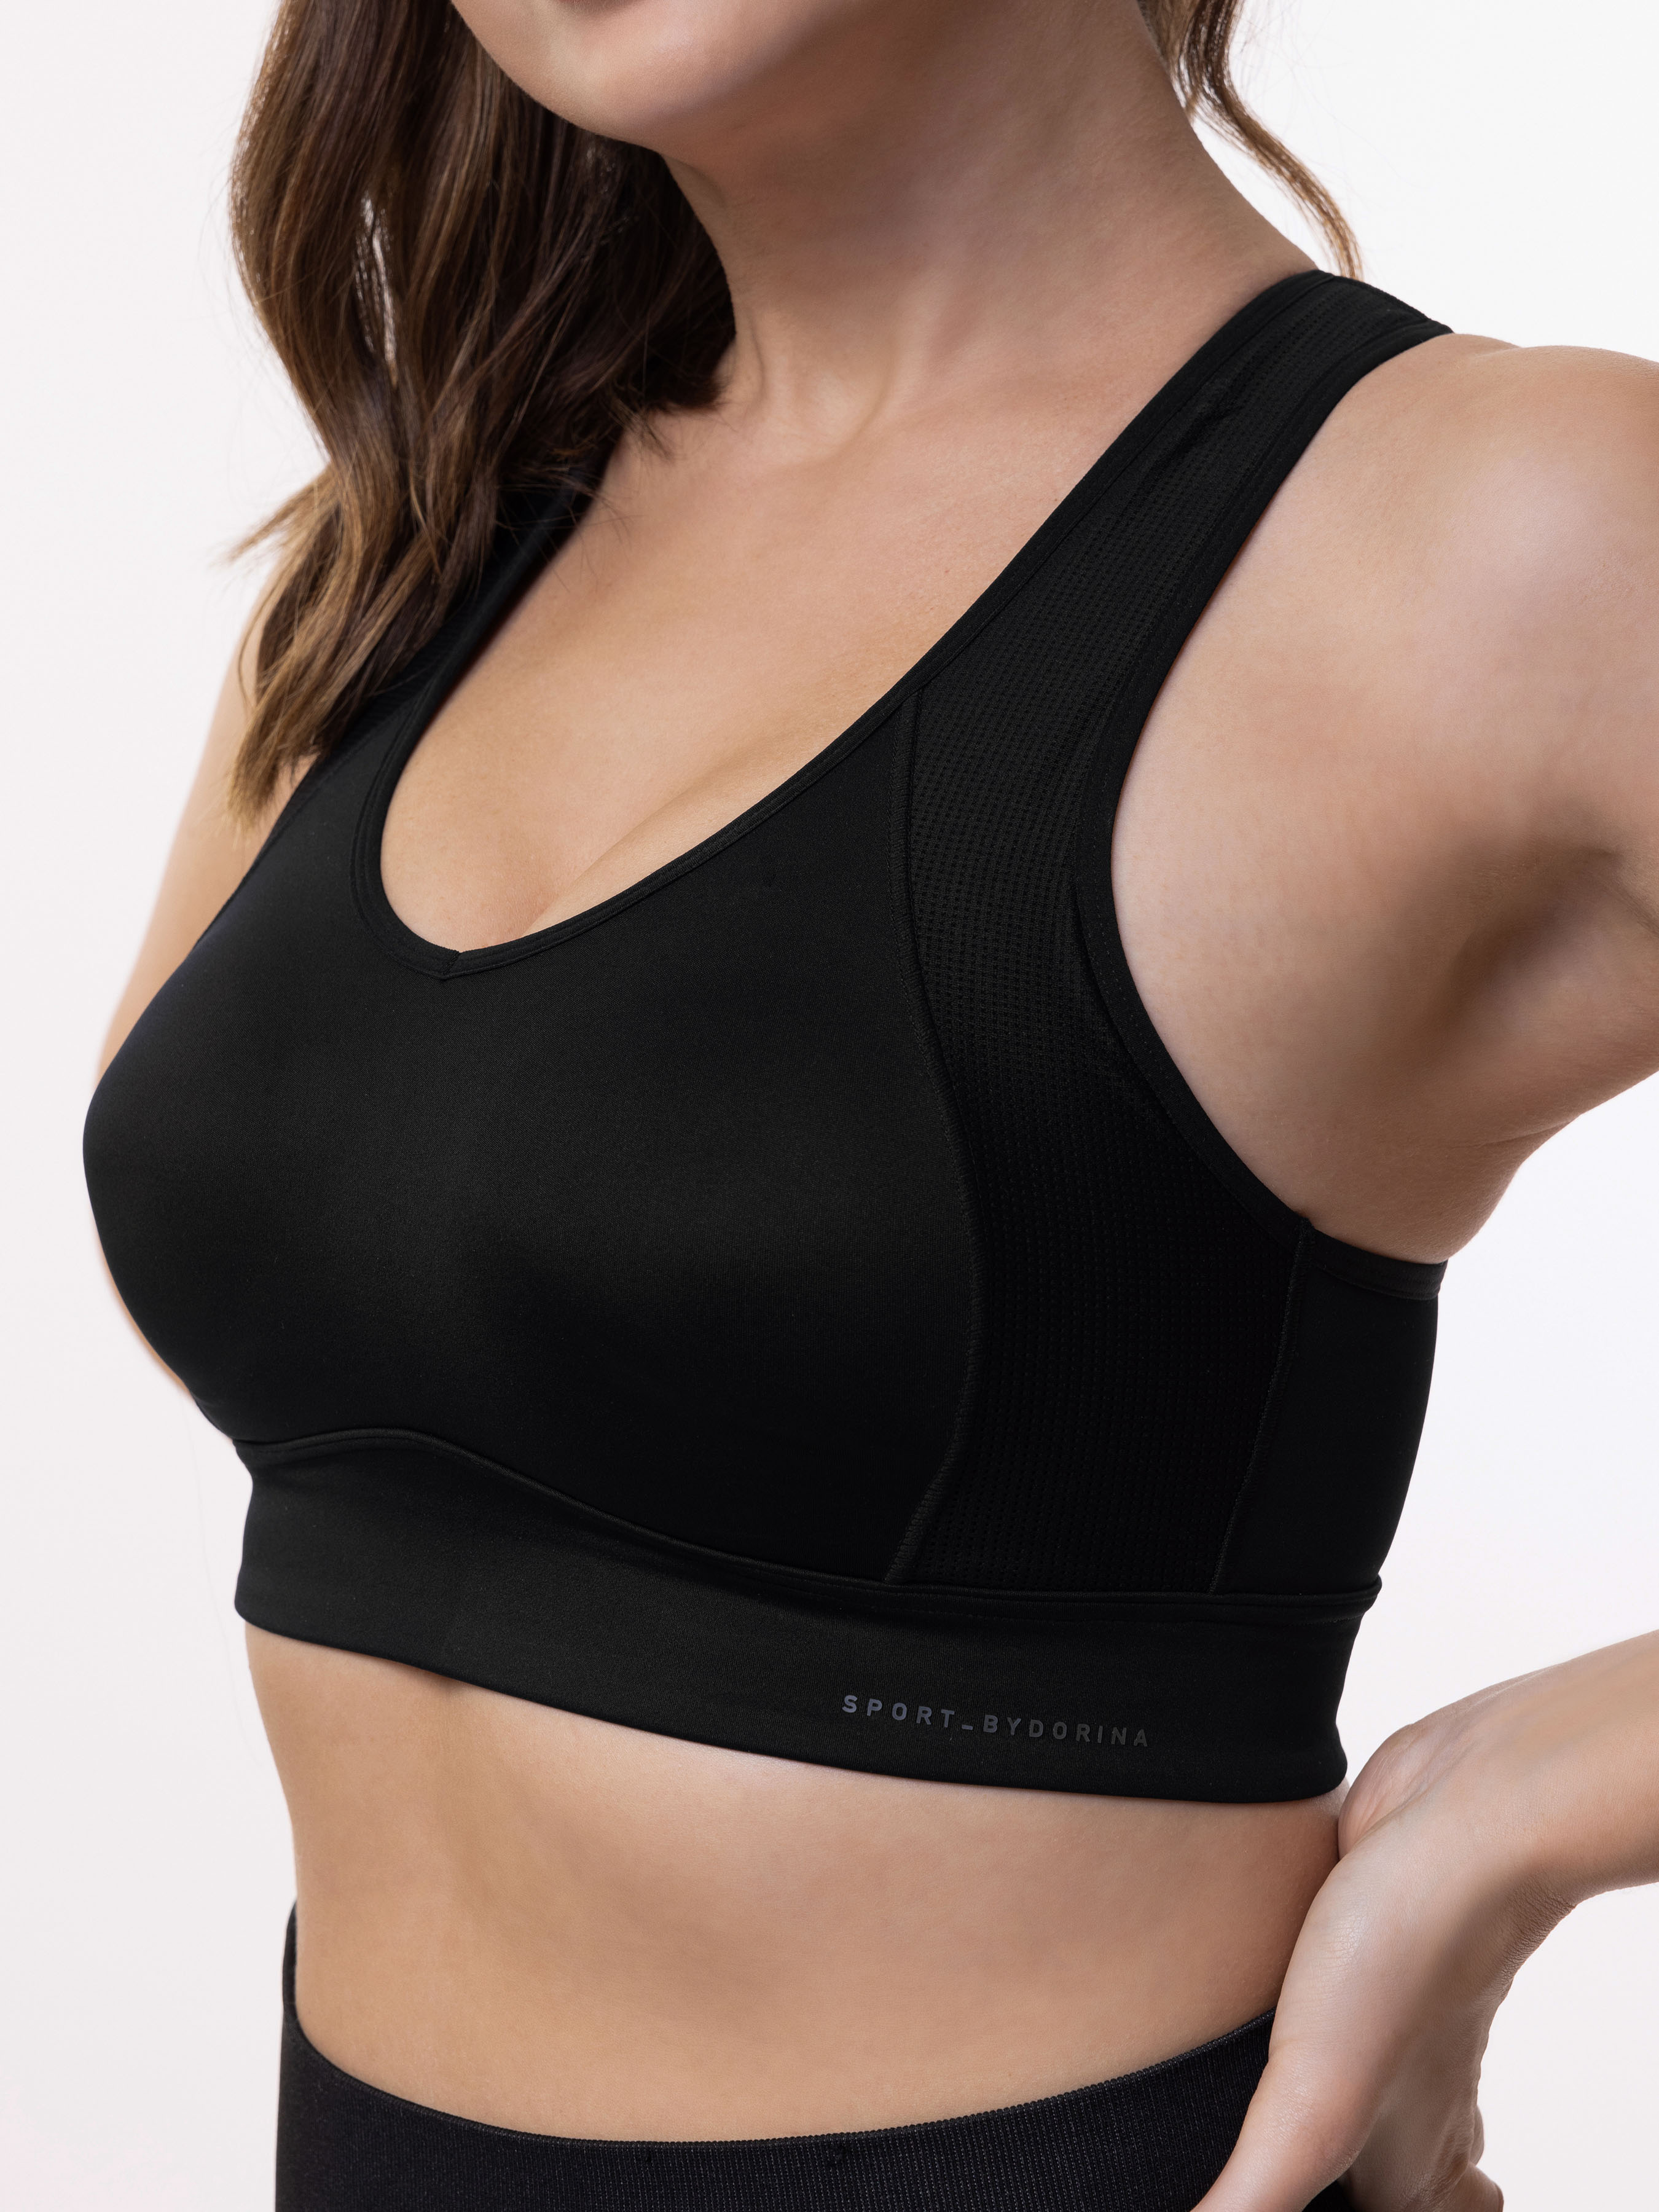 Dorina Defender micro lightly padded zip front sports bra in black